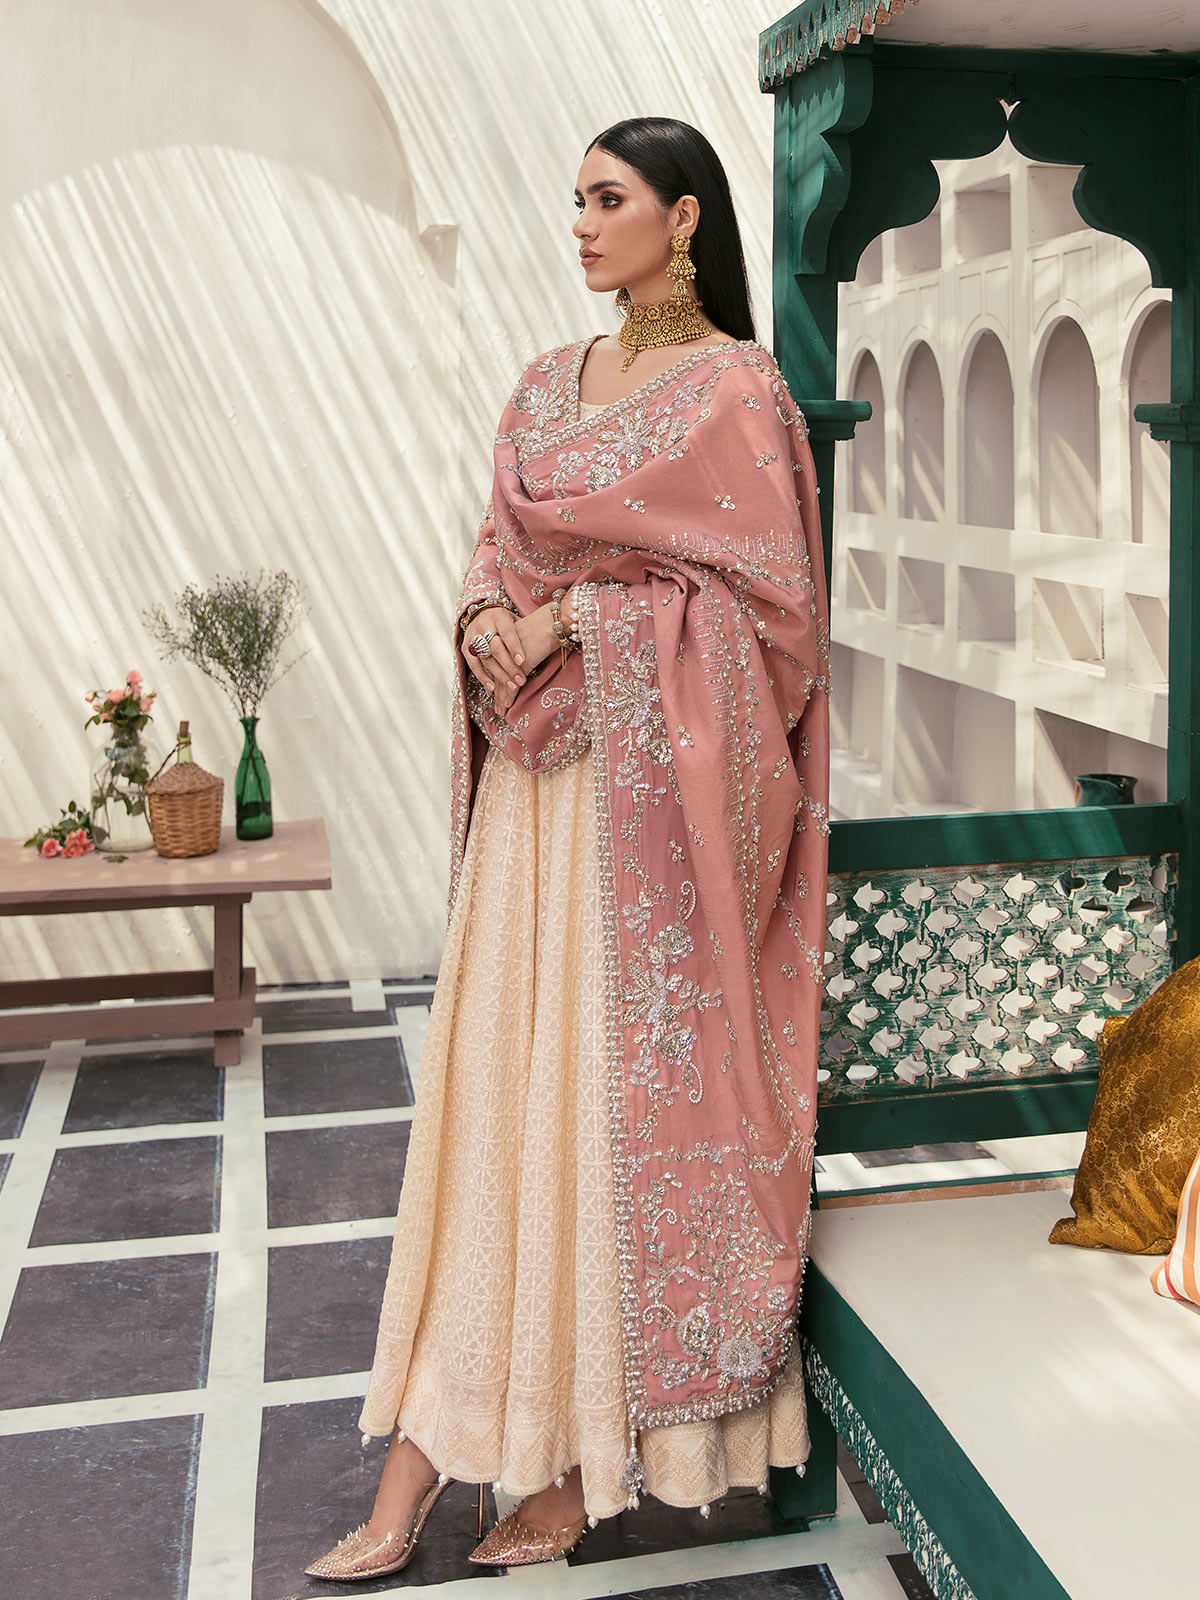 GL-WS-22V1-34 (Pishwas and chooridaar pyjama) Zaryaab Wedding Formals Collection by Gulaal